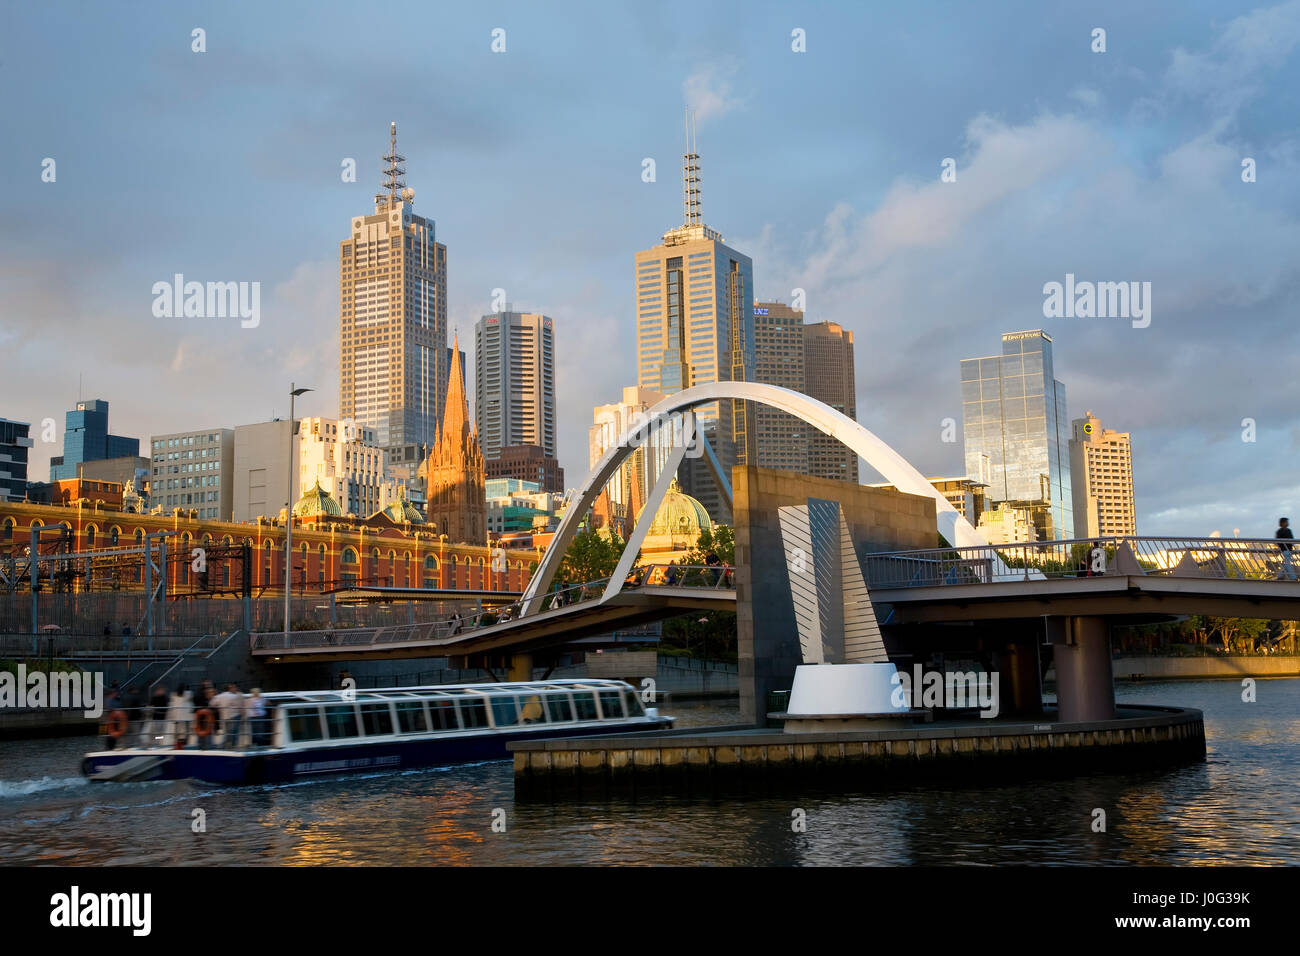 Australia, Victoria, Melbourne, edificios en el banco del río Yarra Foto de stock